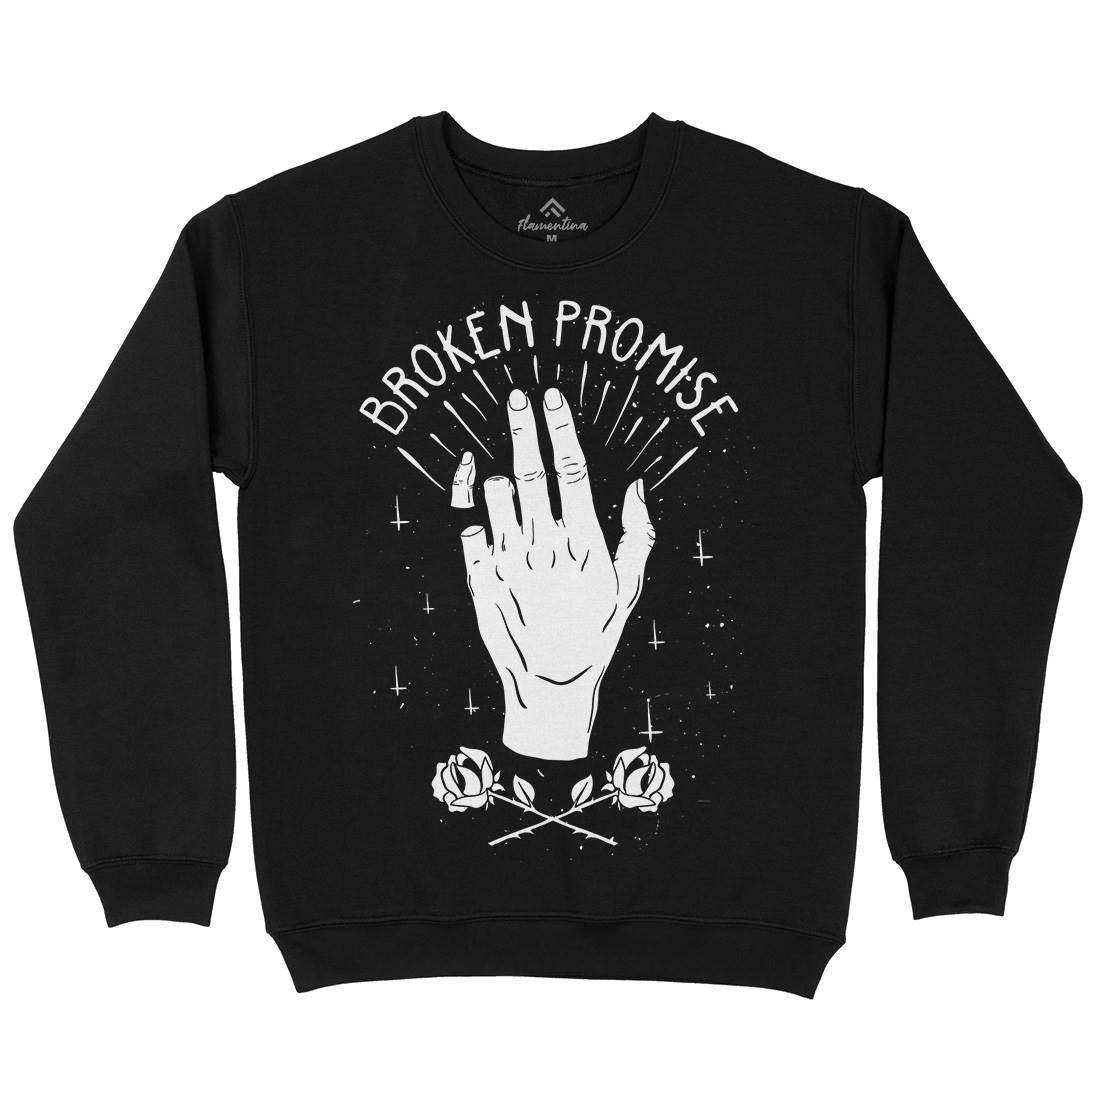 Broken Promise Kids Crew Neck Sweatshirt Retro D447